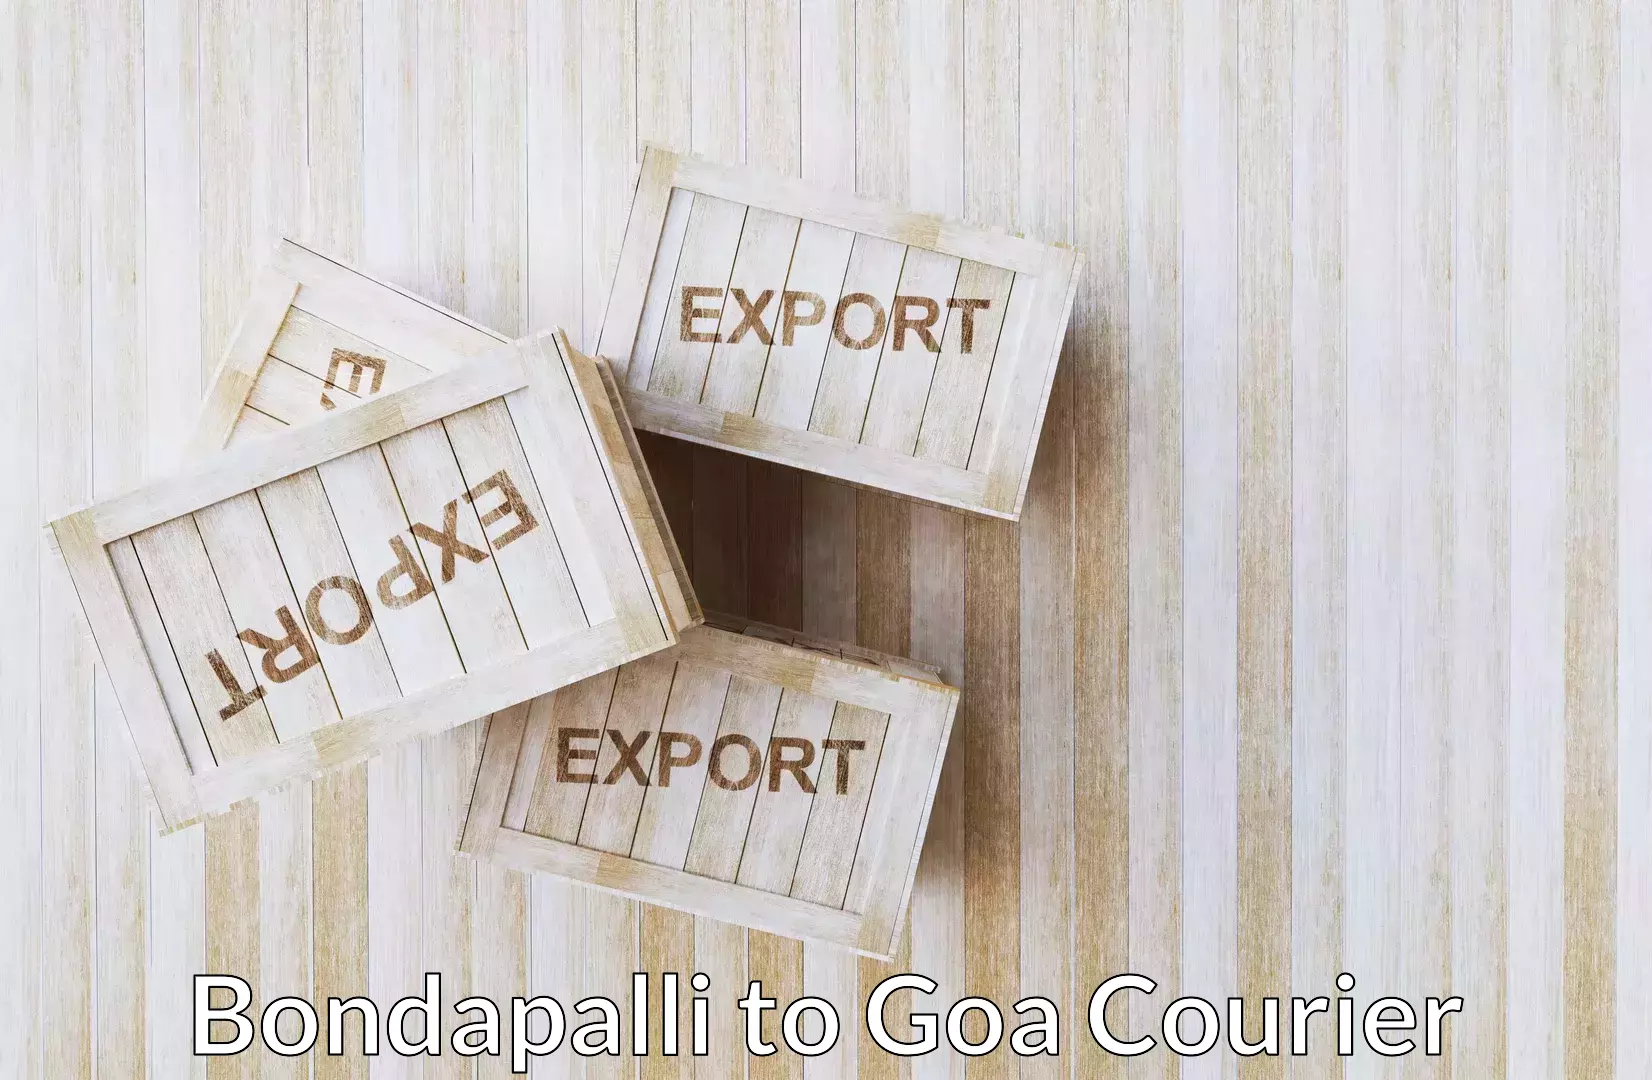 Residential moving experts Bondapalli to Goa